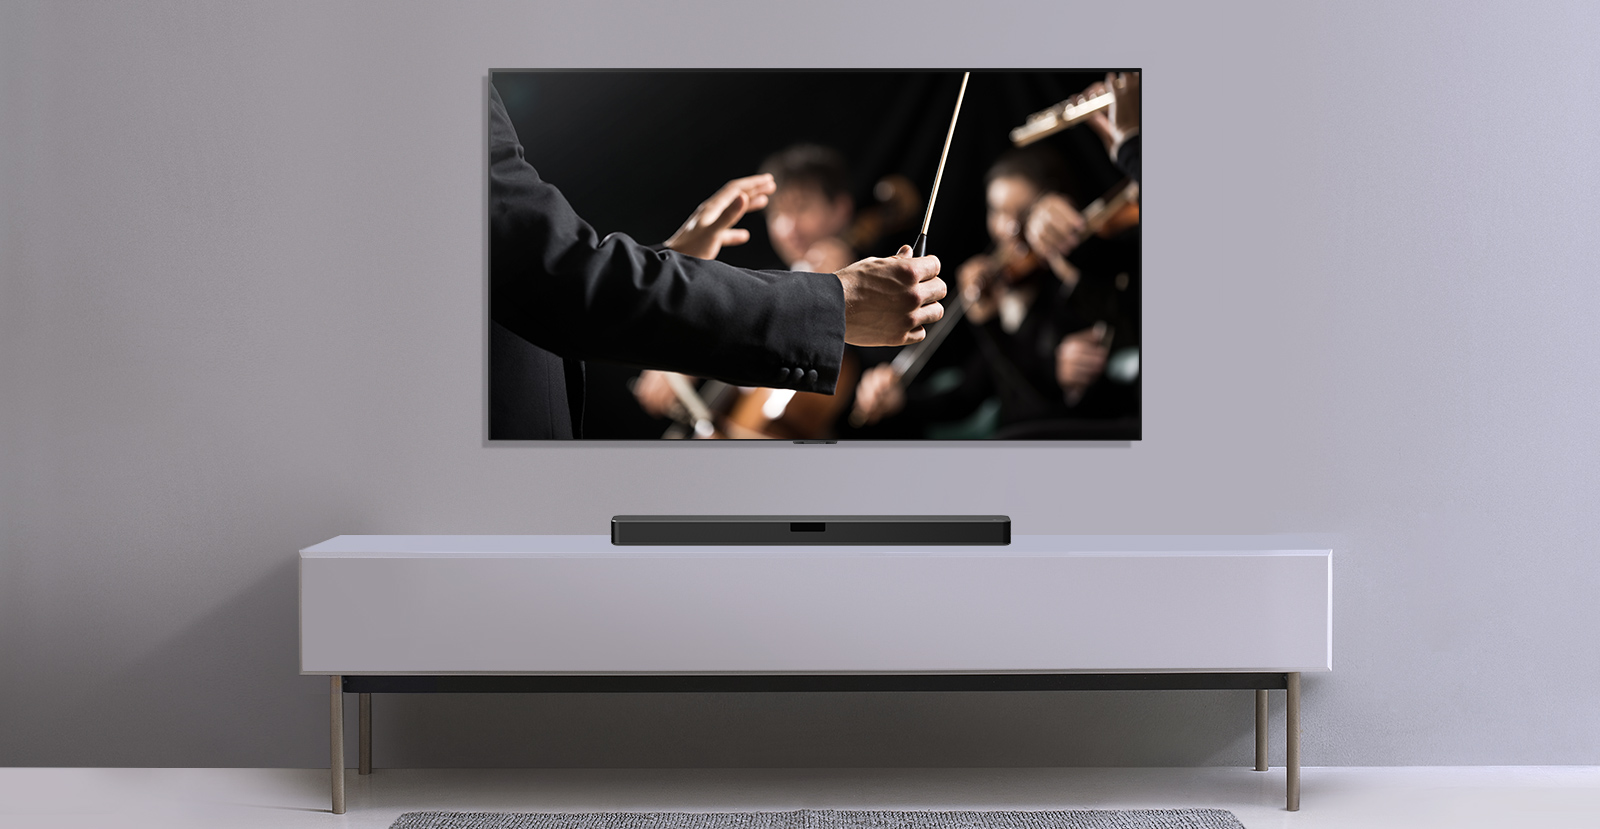 Un téléviseur est représenté sur un mur gris et la barre de son LG en dessous sur une étagère grise. Le téléviseur montre un chef d'orchestre dirigeant un orchestre.